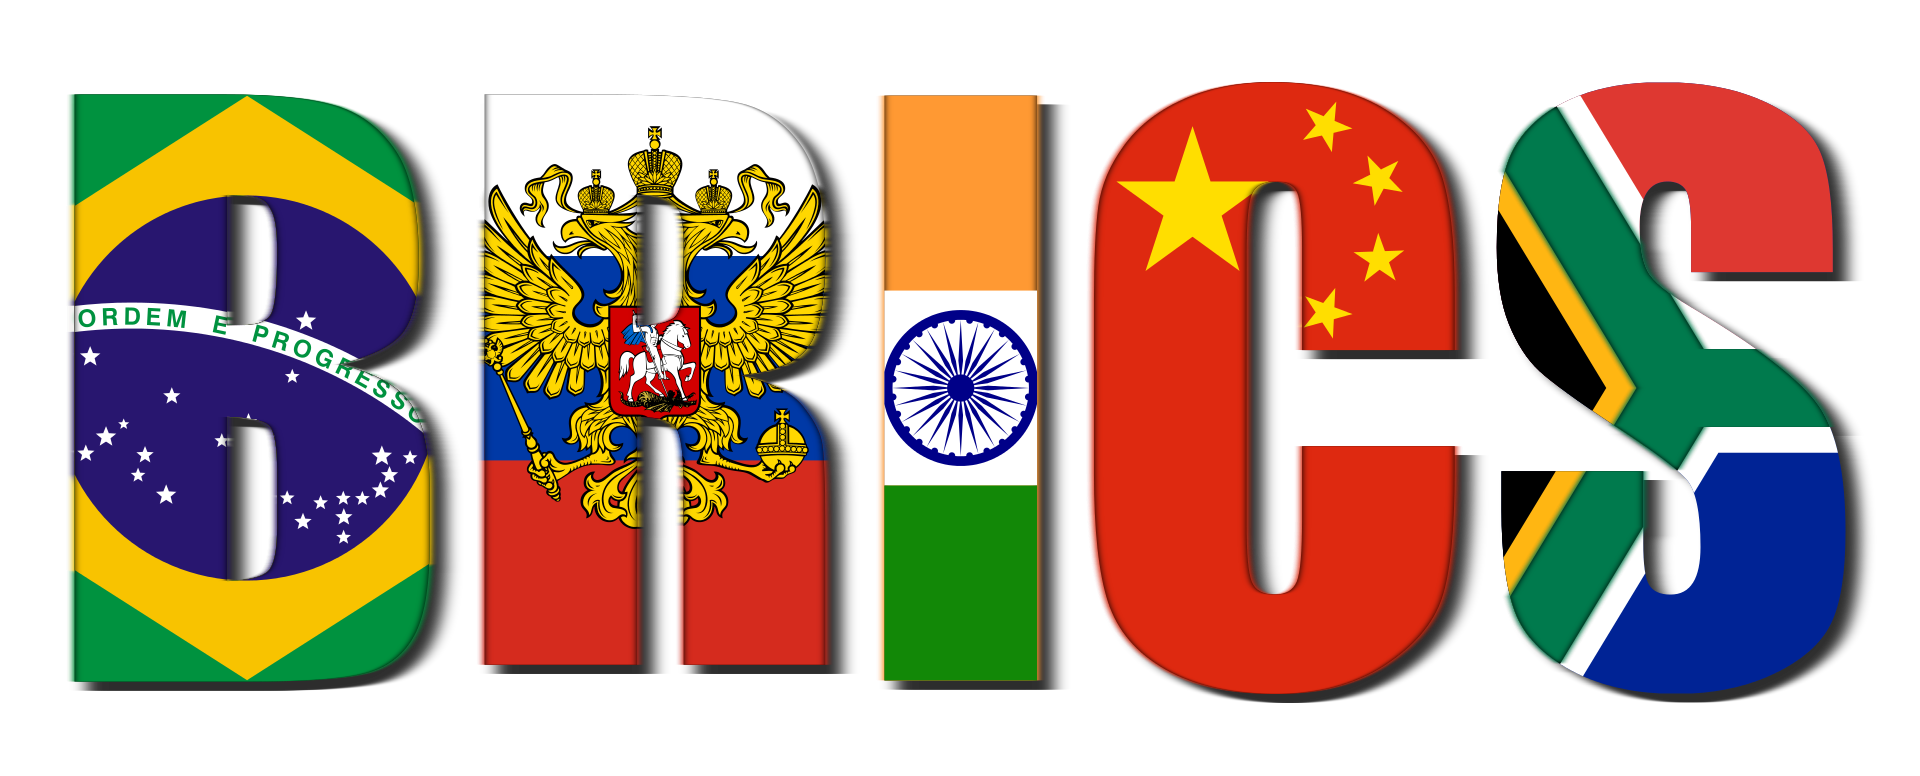 Νότια Αφρική: Ξεκινάει στις 22 Αυγούστου η σύνοδος κορυφής των χωρών BRICS